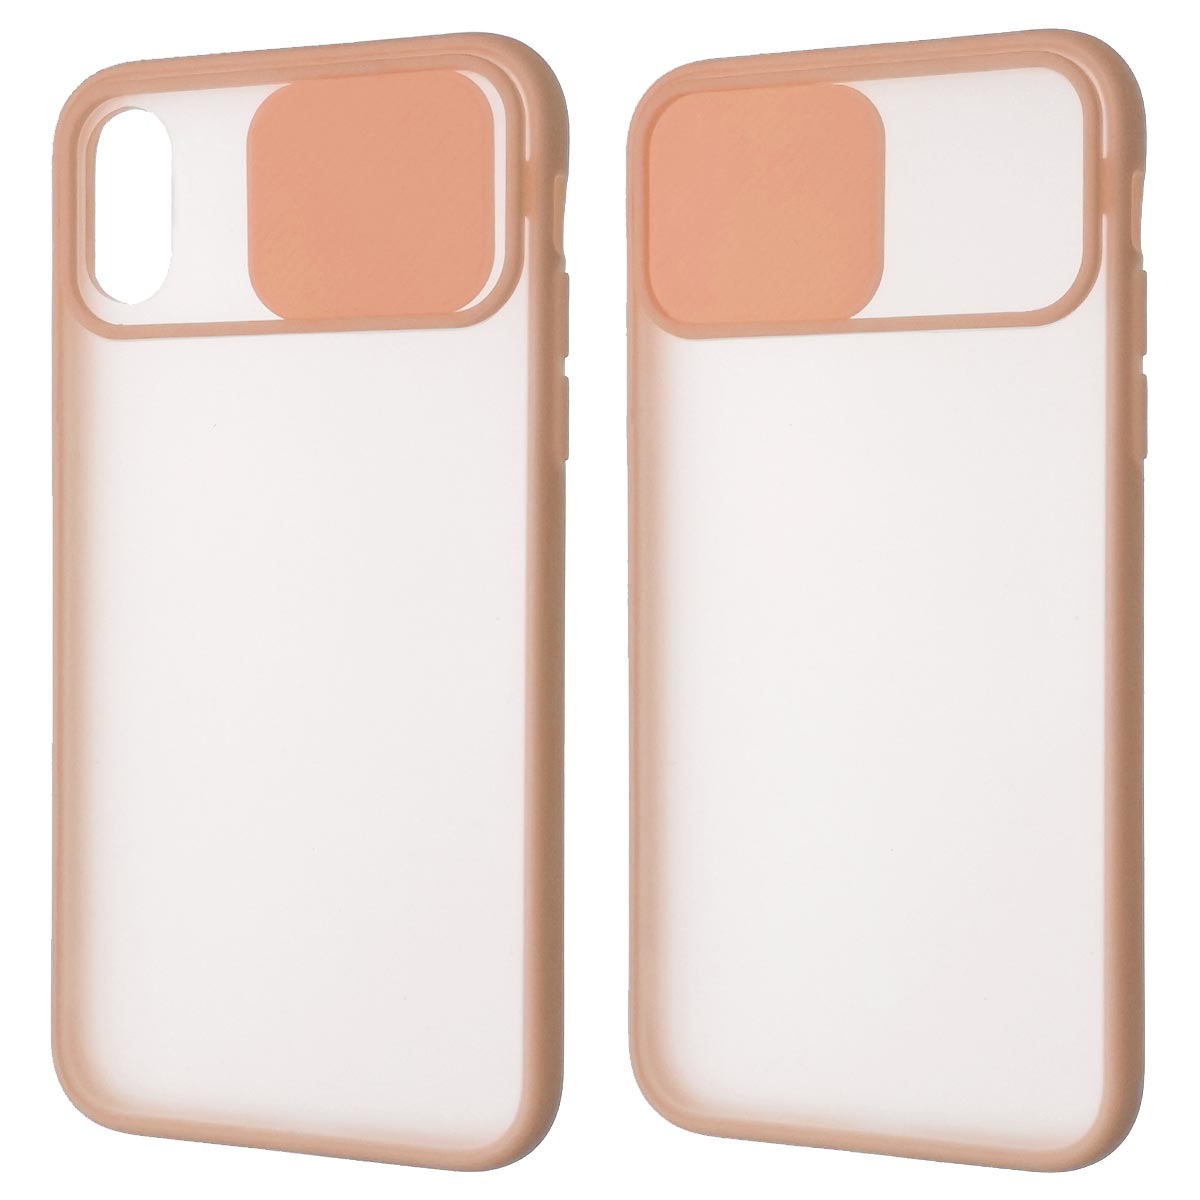 Чехол накладка для APPLE iPhone X, iPhone XS, силикон, пластик, матовый, со шторкой для защиты задней камеры, цвет окантовки персиковый